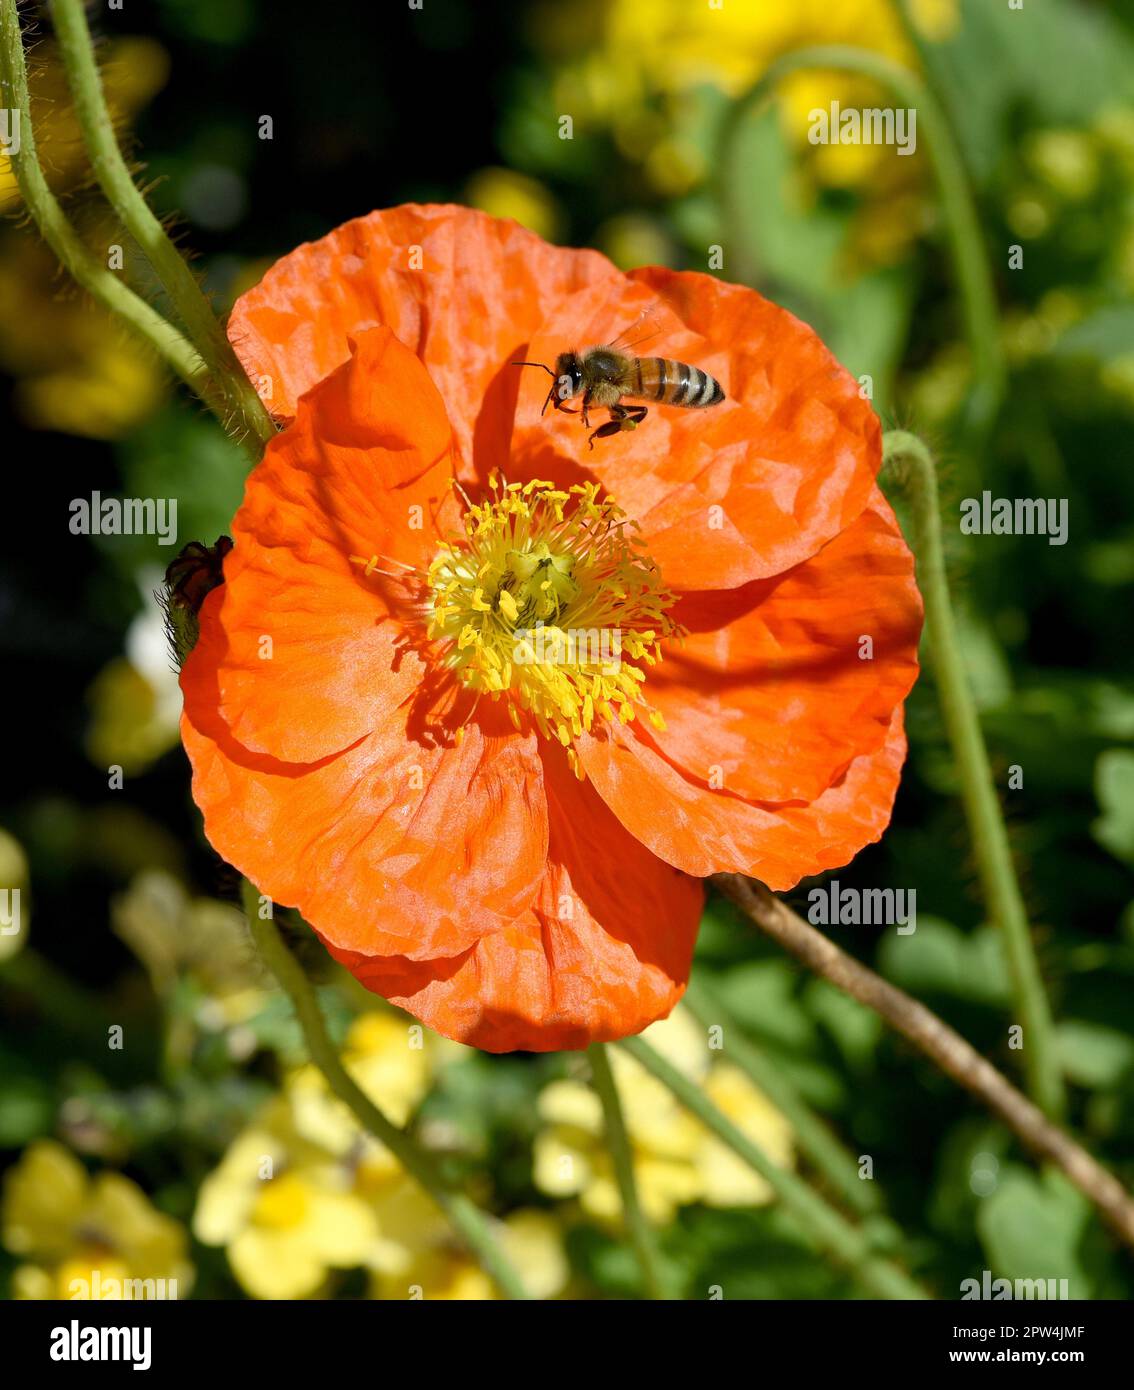 Biene, Apis mellifera, ist ein wichtiges Insekt zur Bestaeubung von Pflanzen und zum Sammeln von Honig auf Islaendischer, Mohn, Papaver, nudicaule. Ho Stock Photo